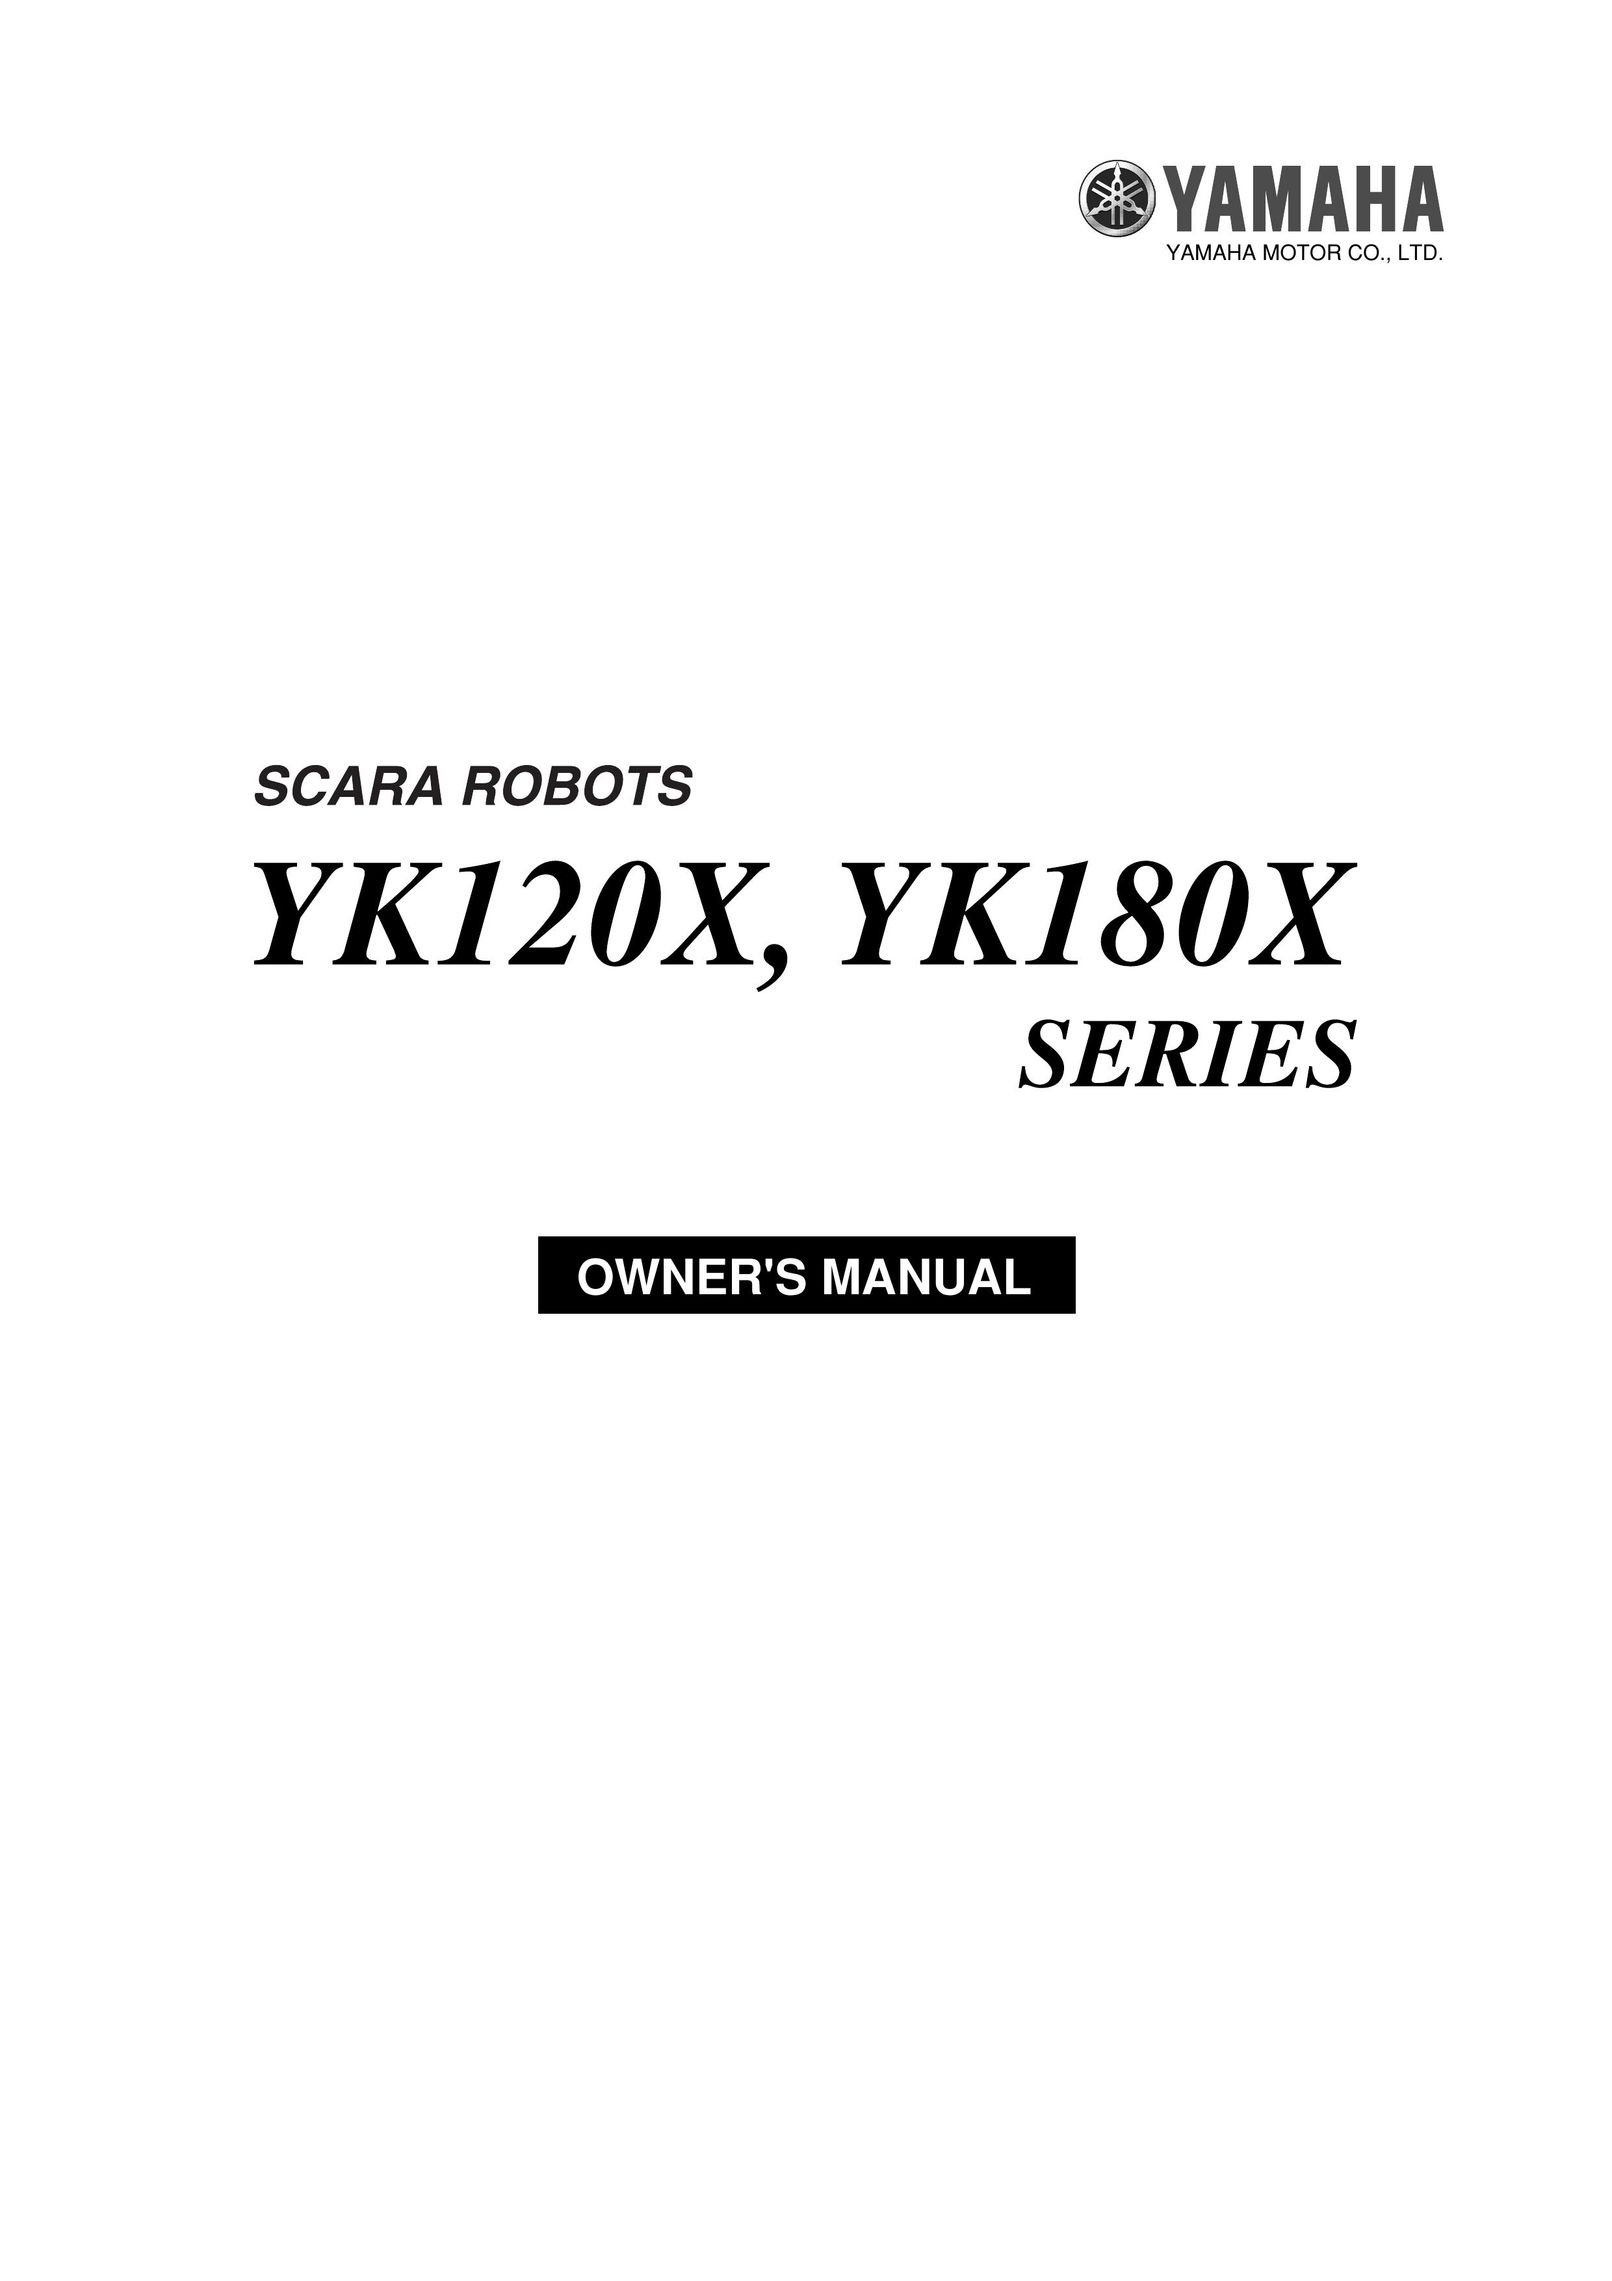 Yamaha YK180X Robotics User Manual